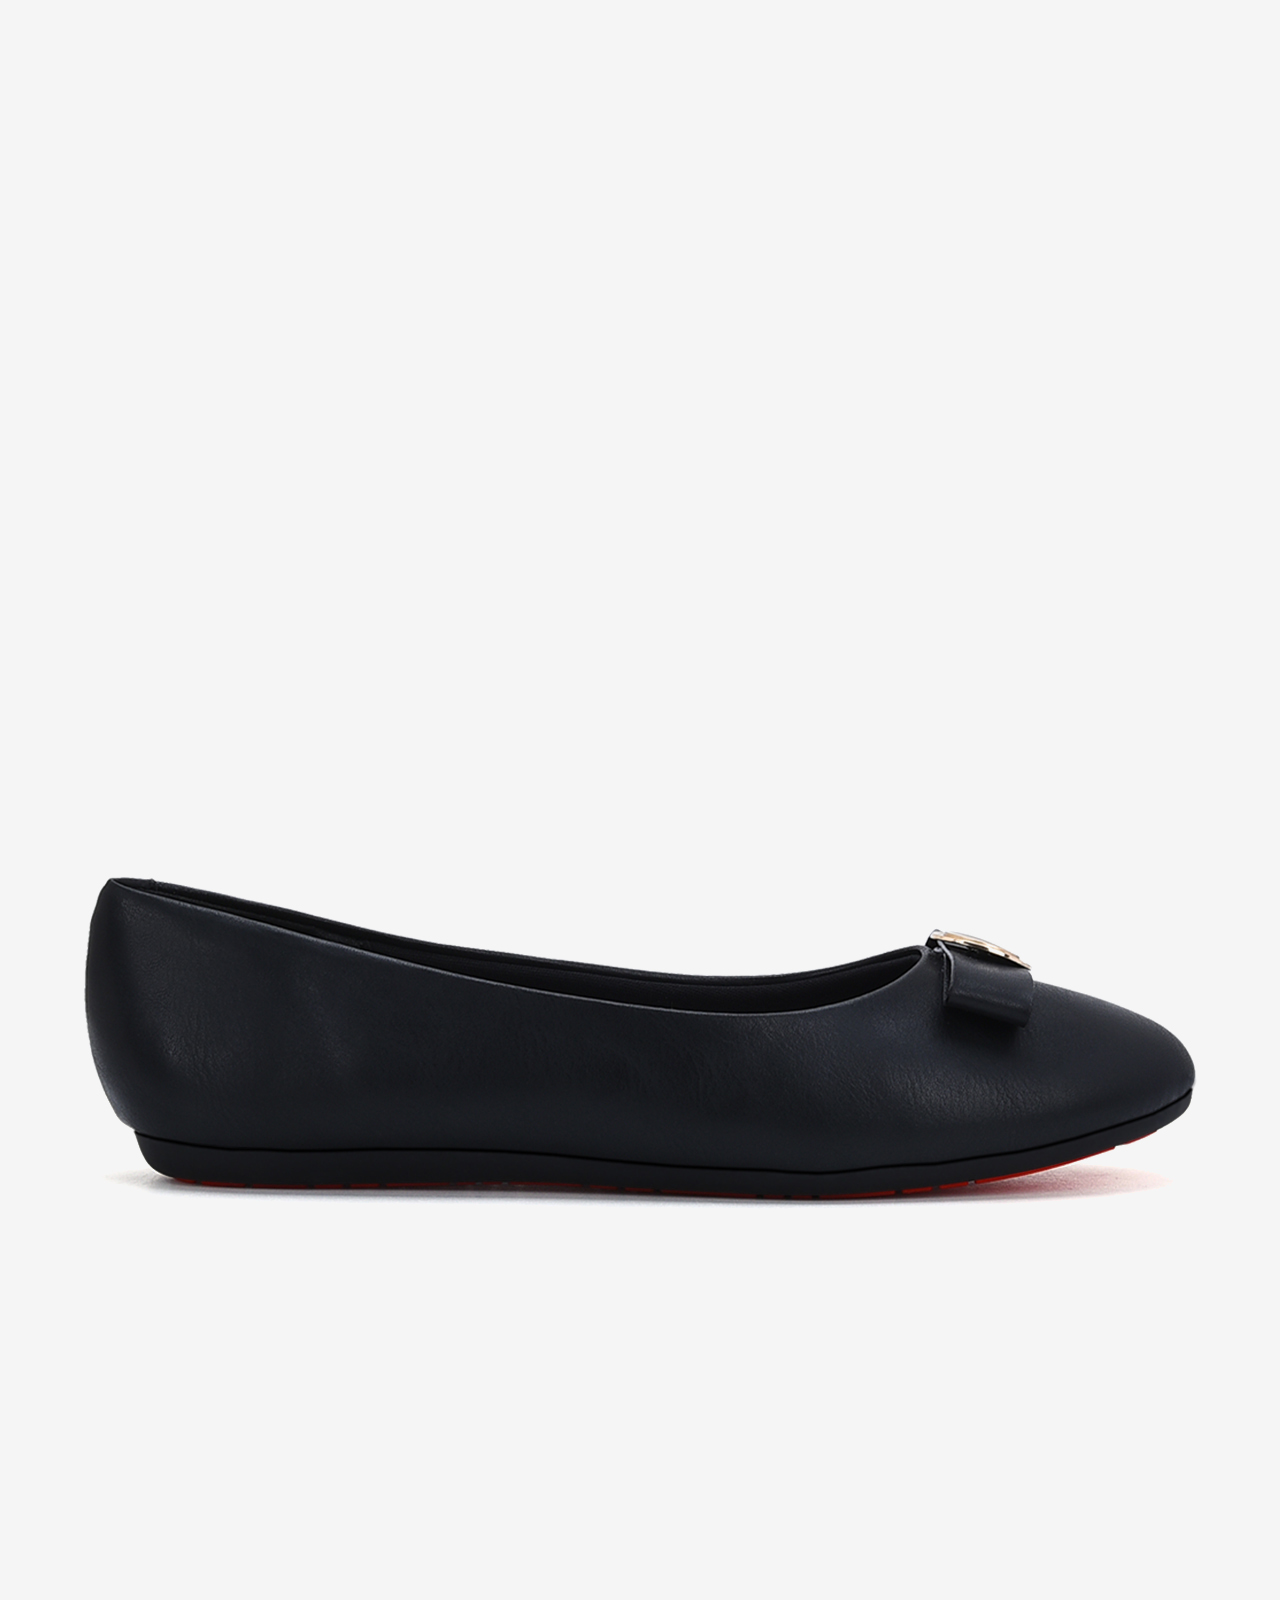 Giày búp bê nữ Đông Hải thiết kế nơ  da  đính kim loại thanh lịch - G81I6